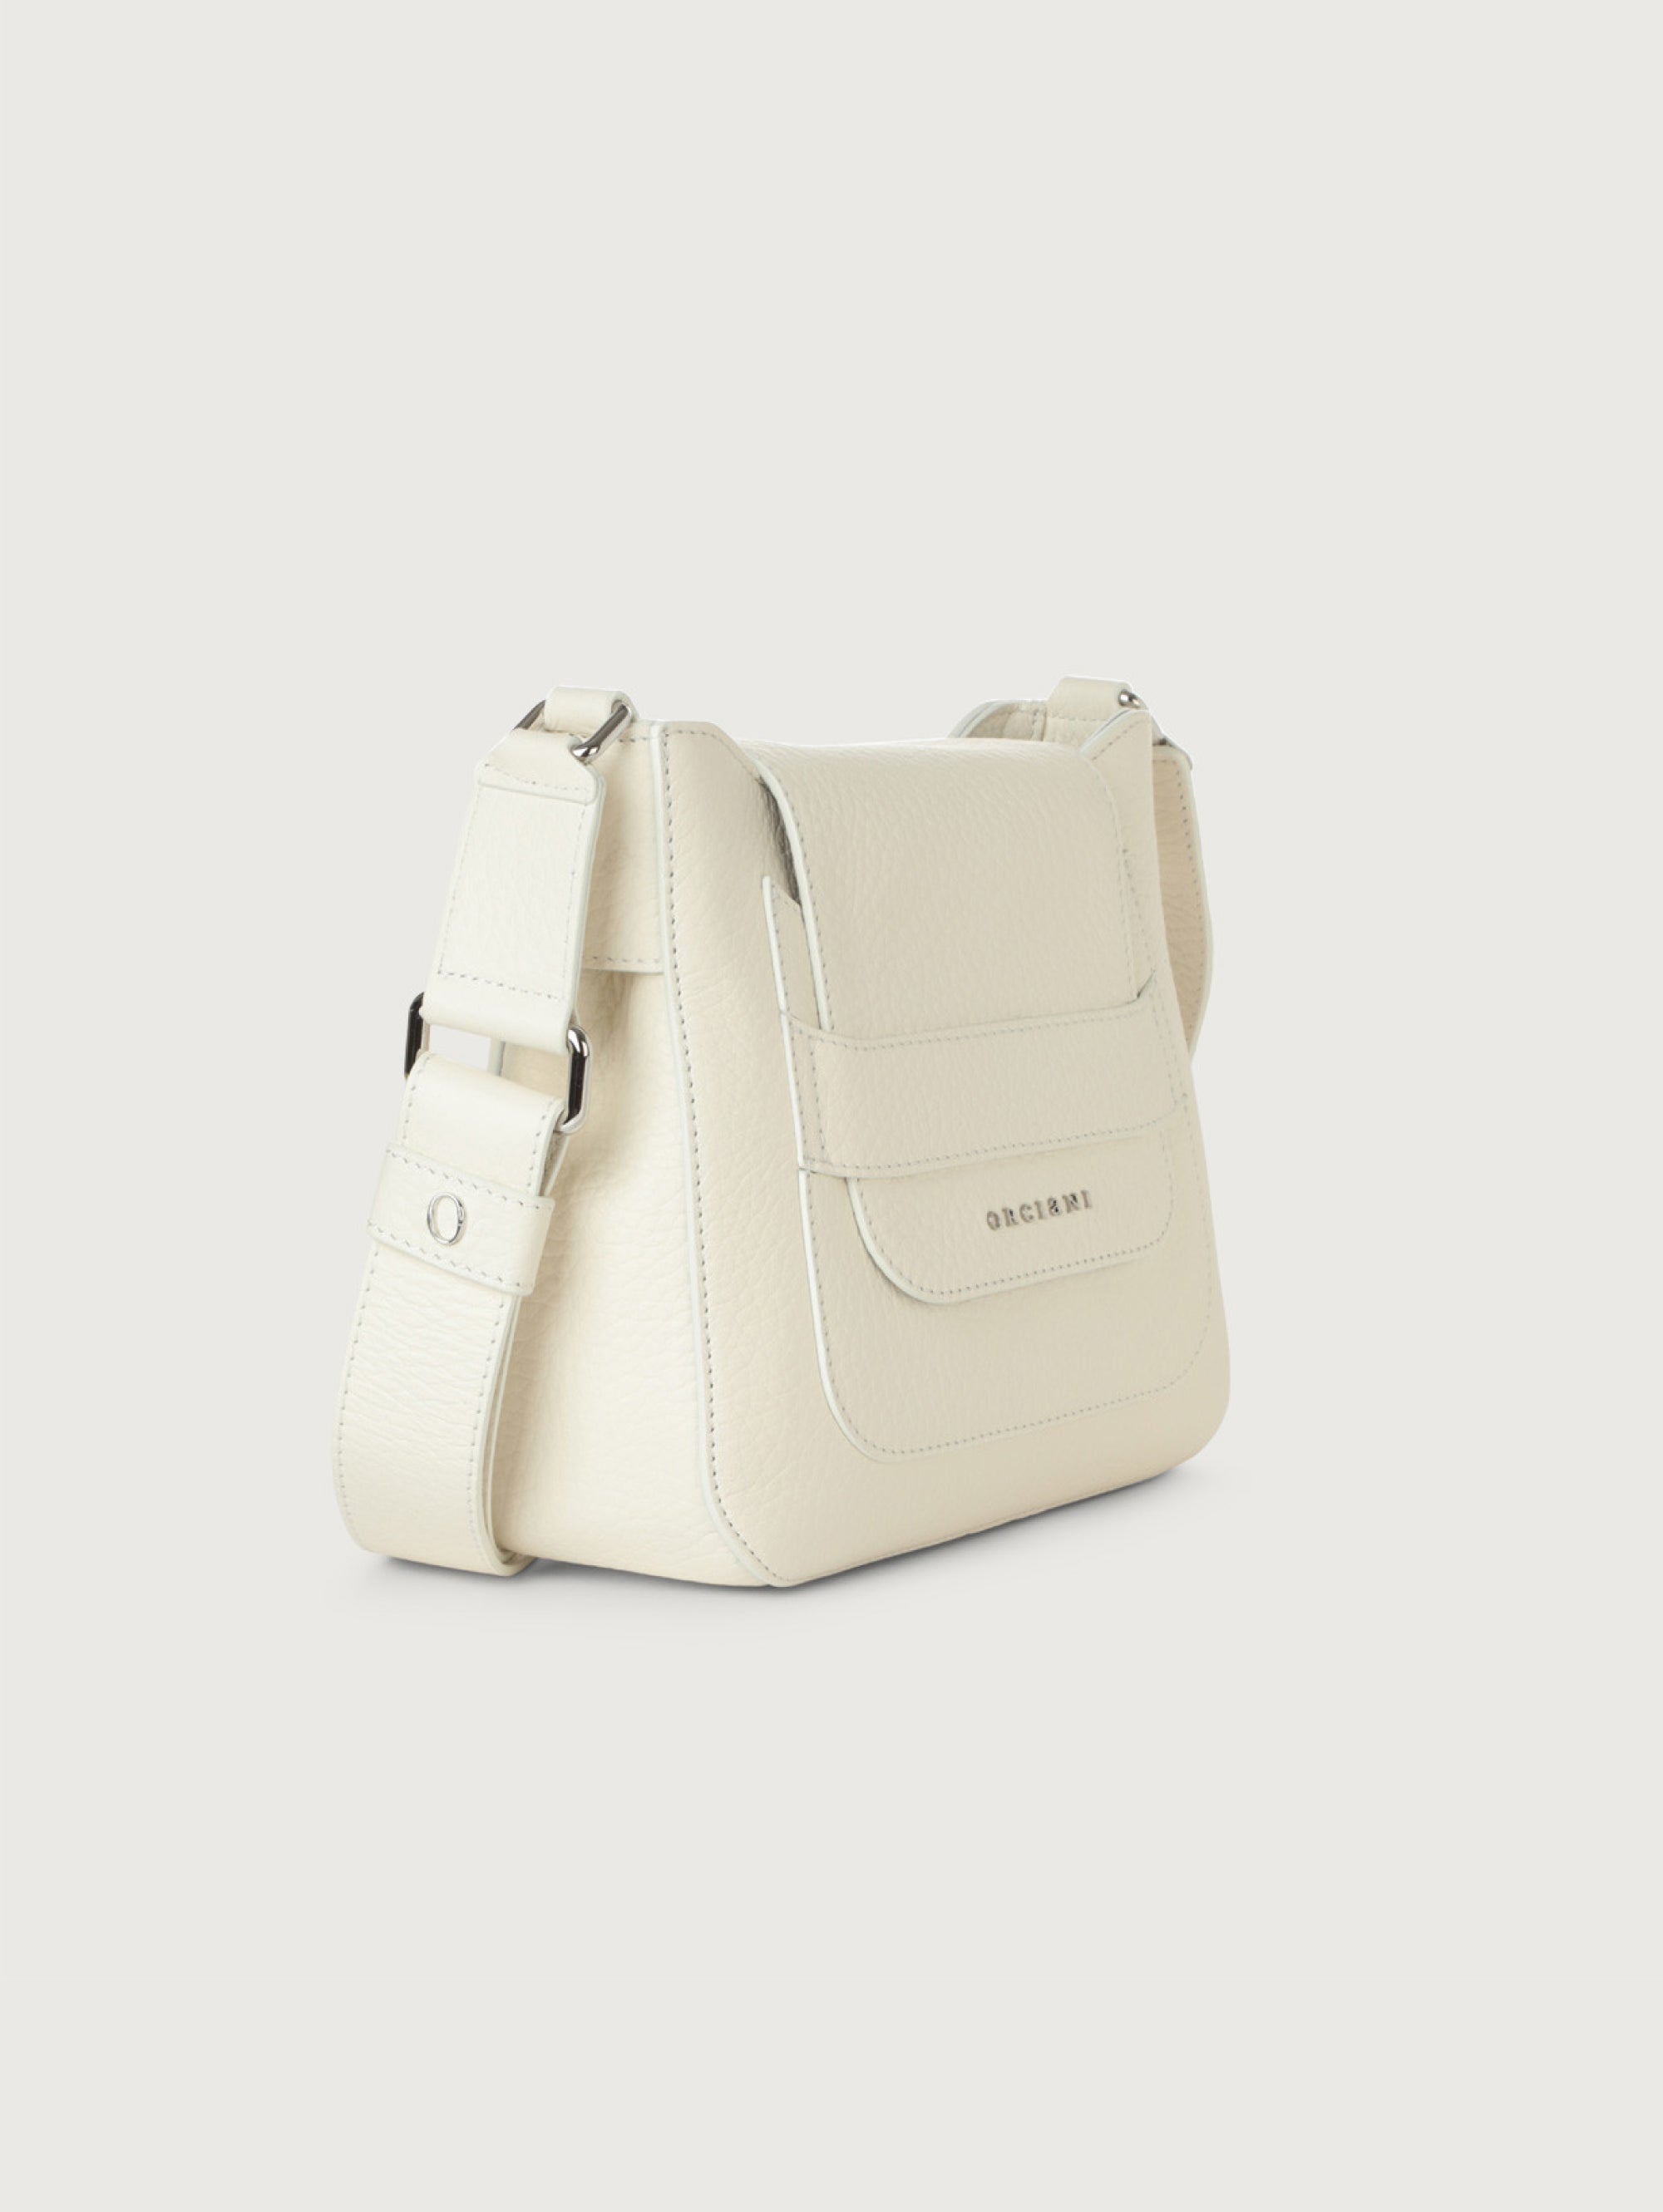 Dama Shoulder Bag in White Hammered Leather